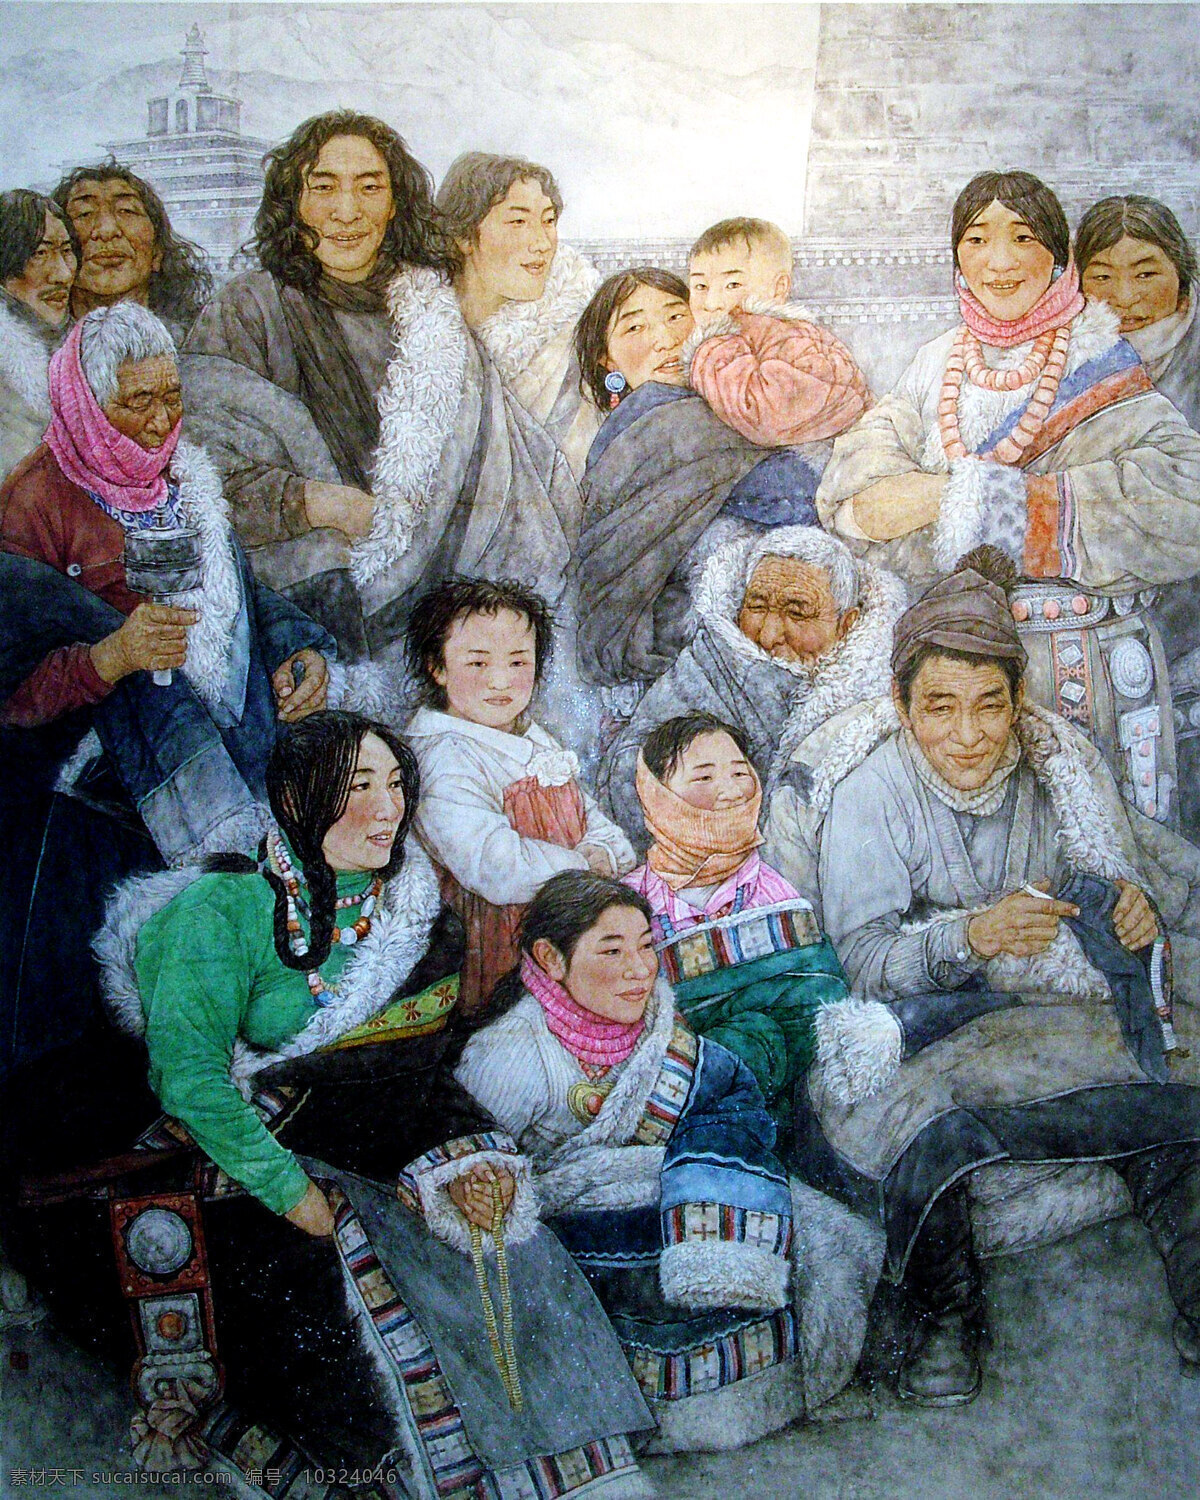 欢乐曲 绘画 中国画 工笔重彩画 人物画 现代国画 人物 男人 女人 儿童 老人 妇女 藏民 藏族 表情 姿态 服饰 发型 欢快 国画艺术 书法 印章 国画集21 绘画书法 文化艺术